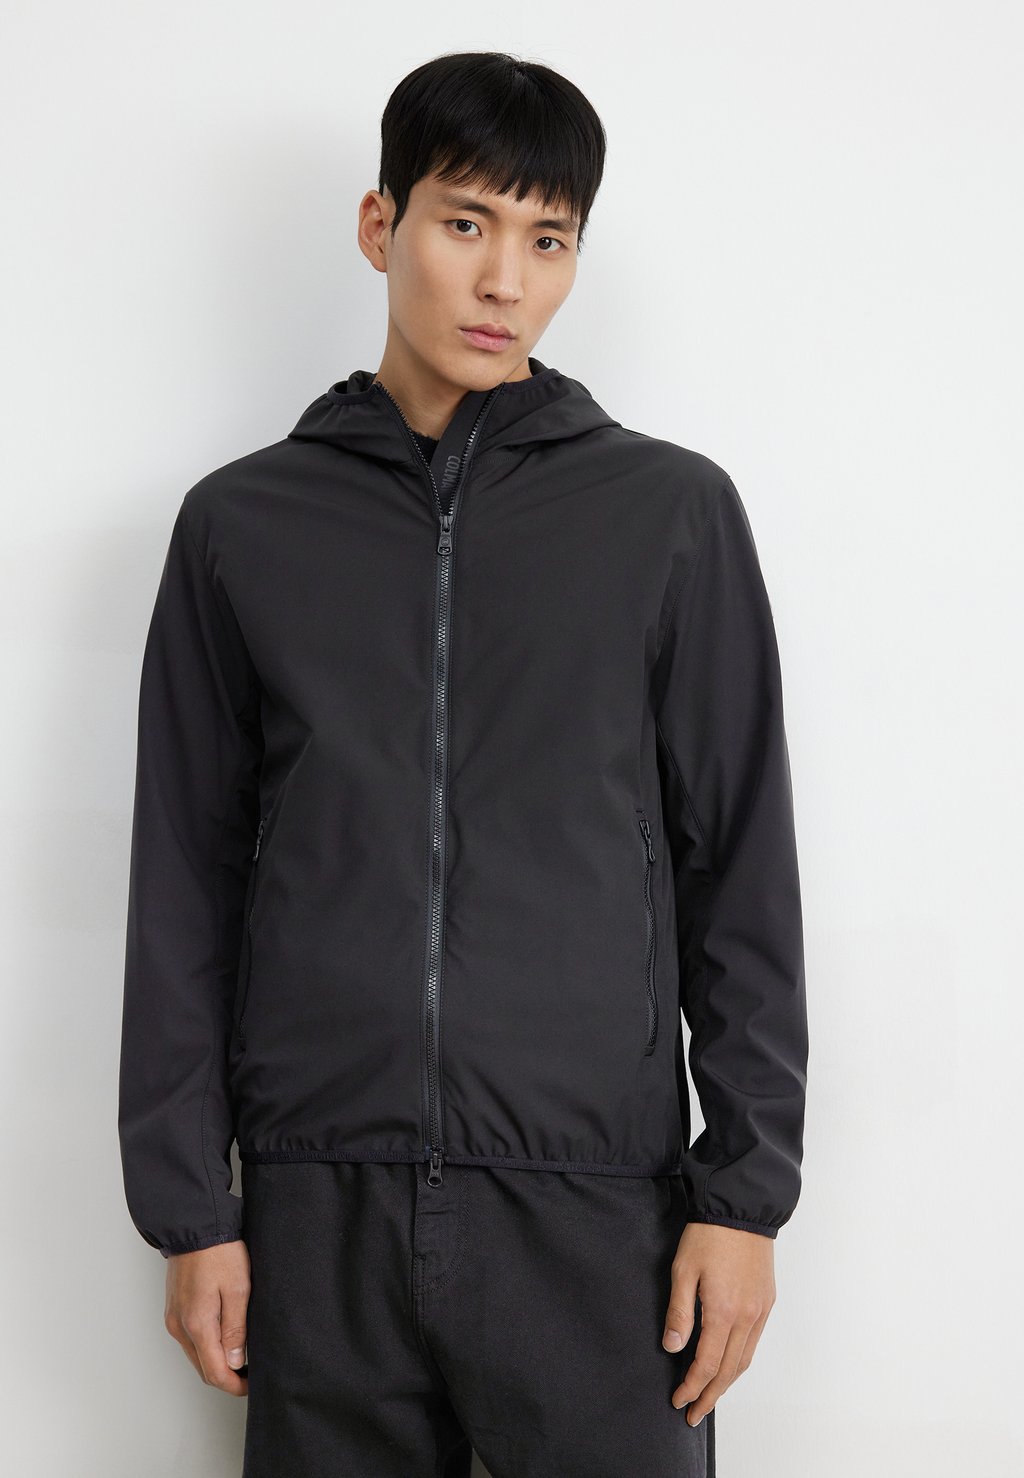 Легкая куртка Colmar Originals, черная цена и фото